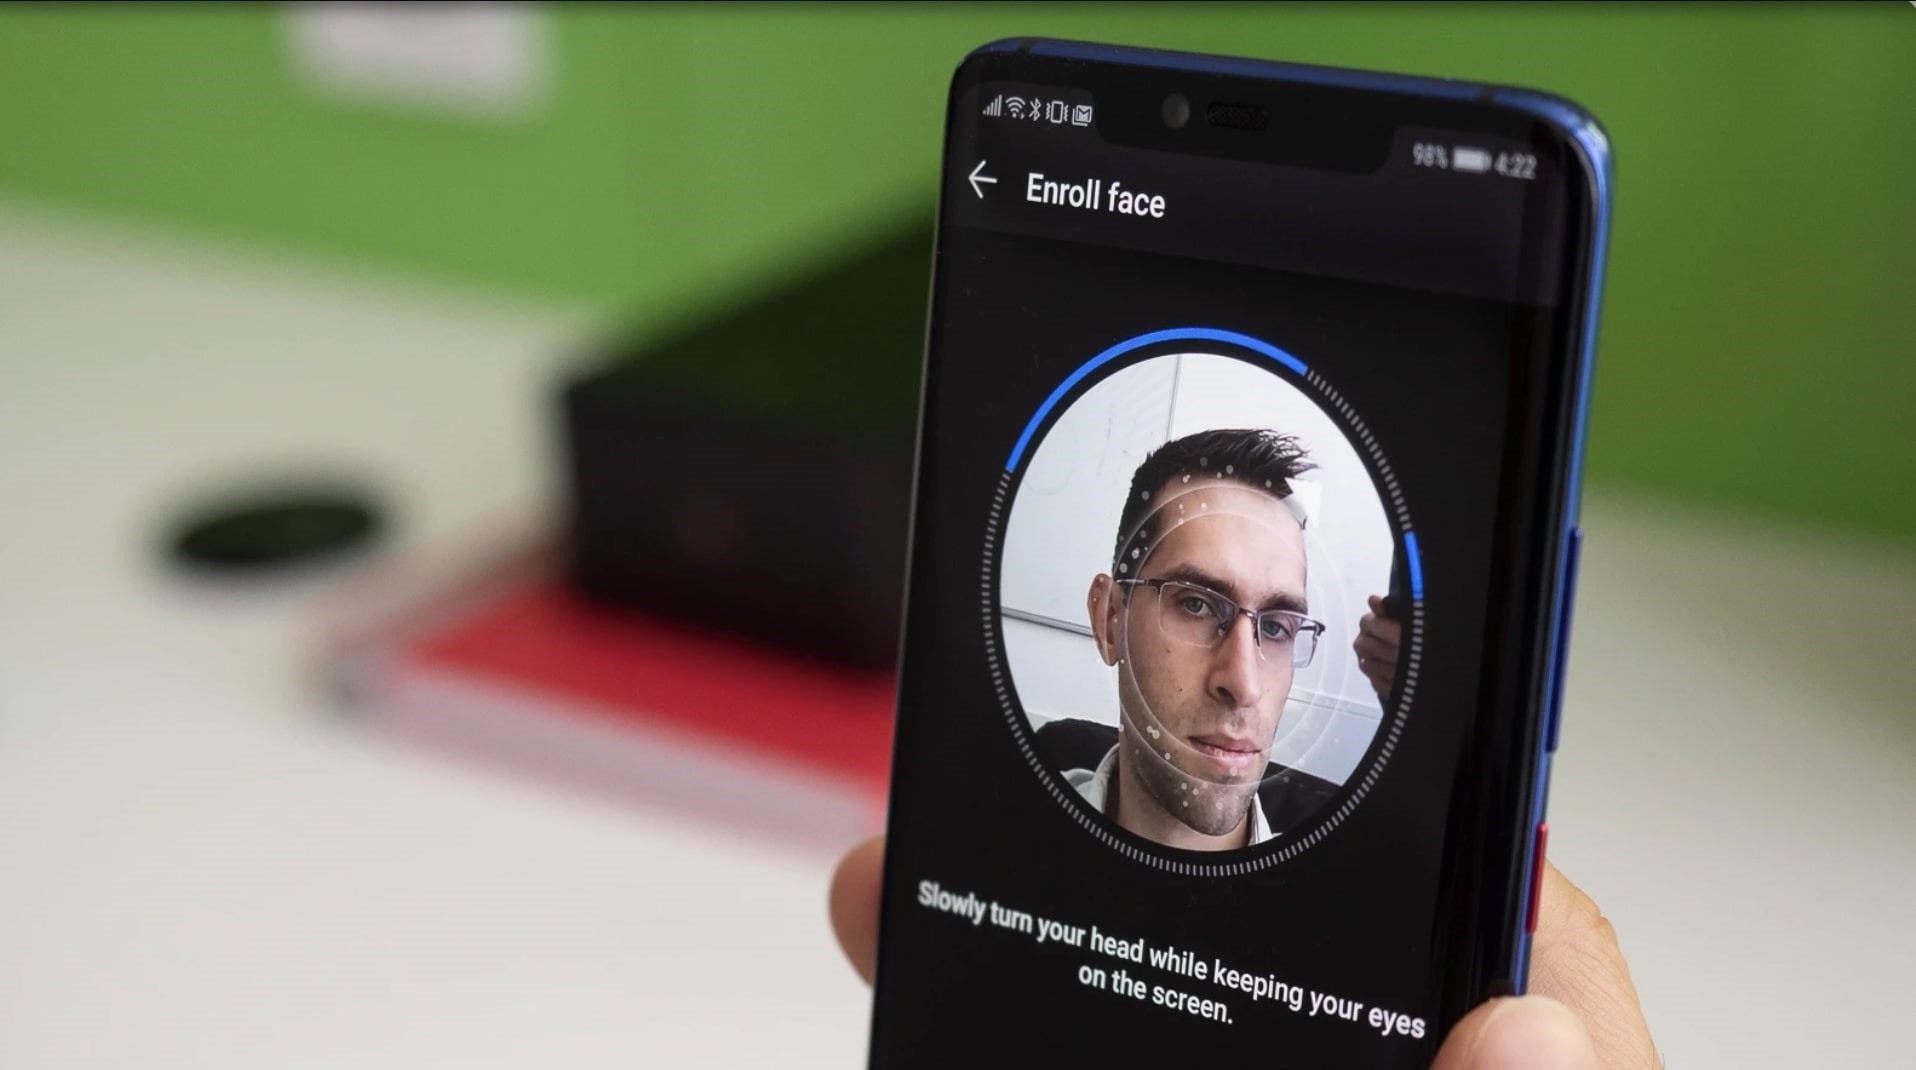 Android hay iOS là người tiên phong sử dụng nhận dạng khuôn mặt?